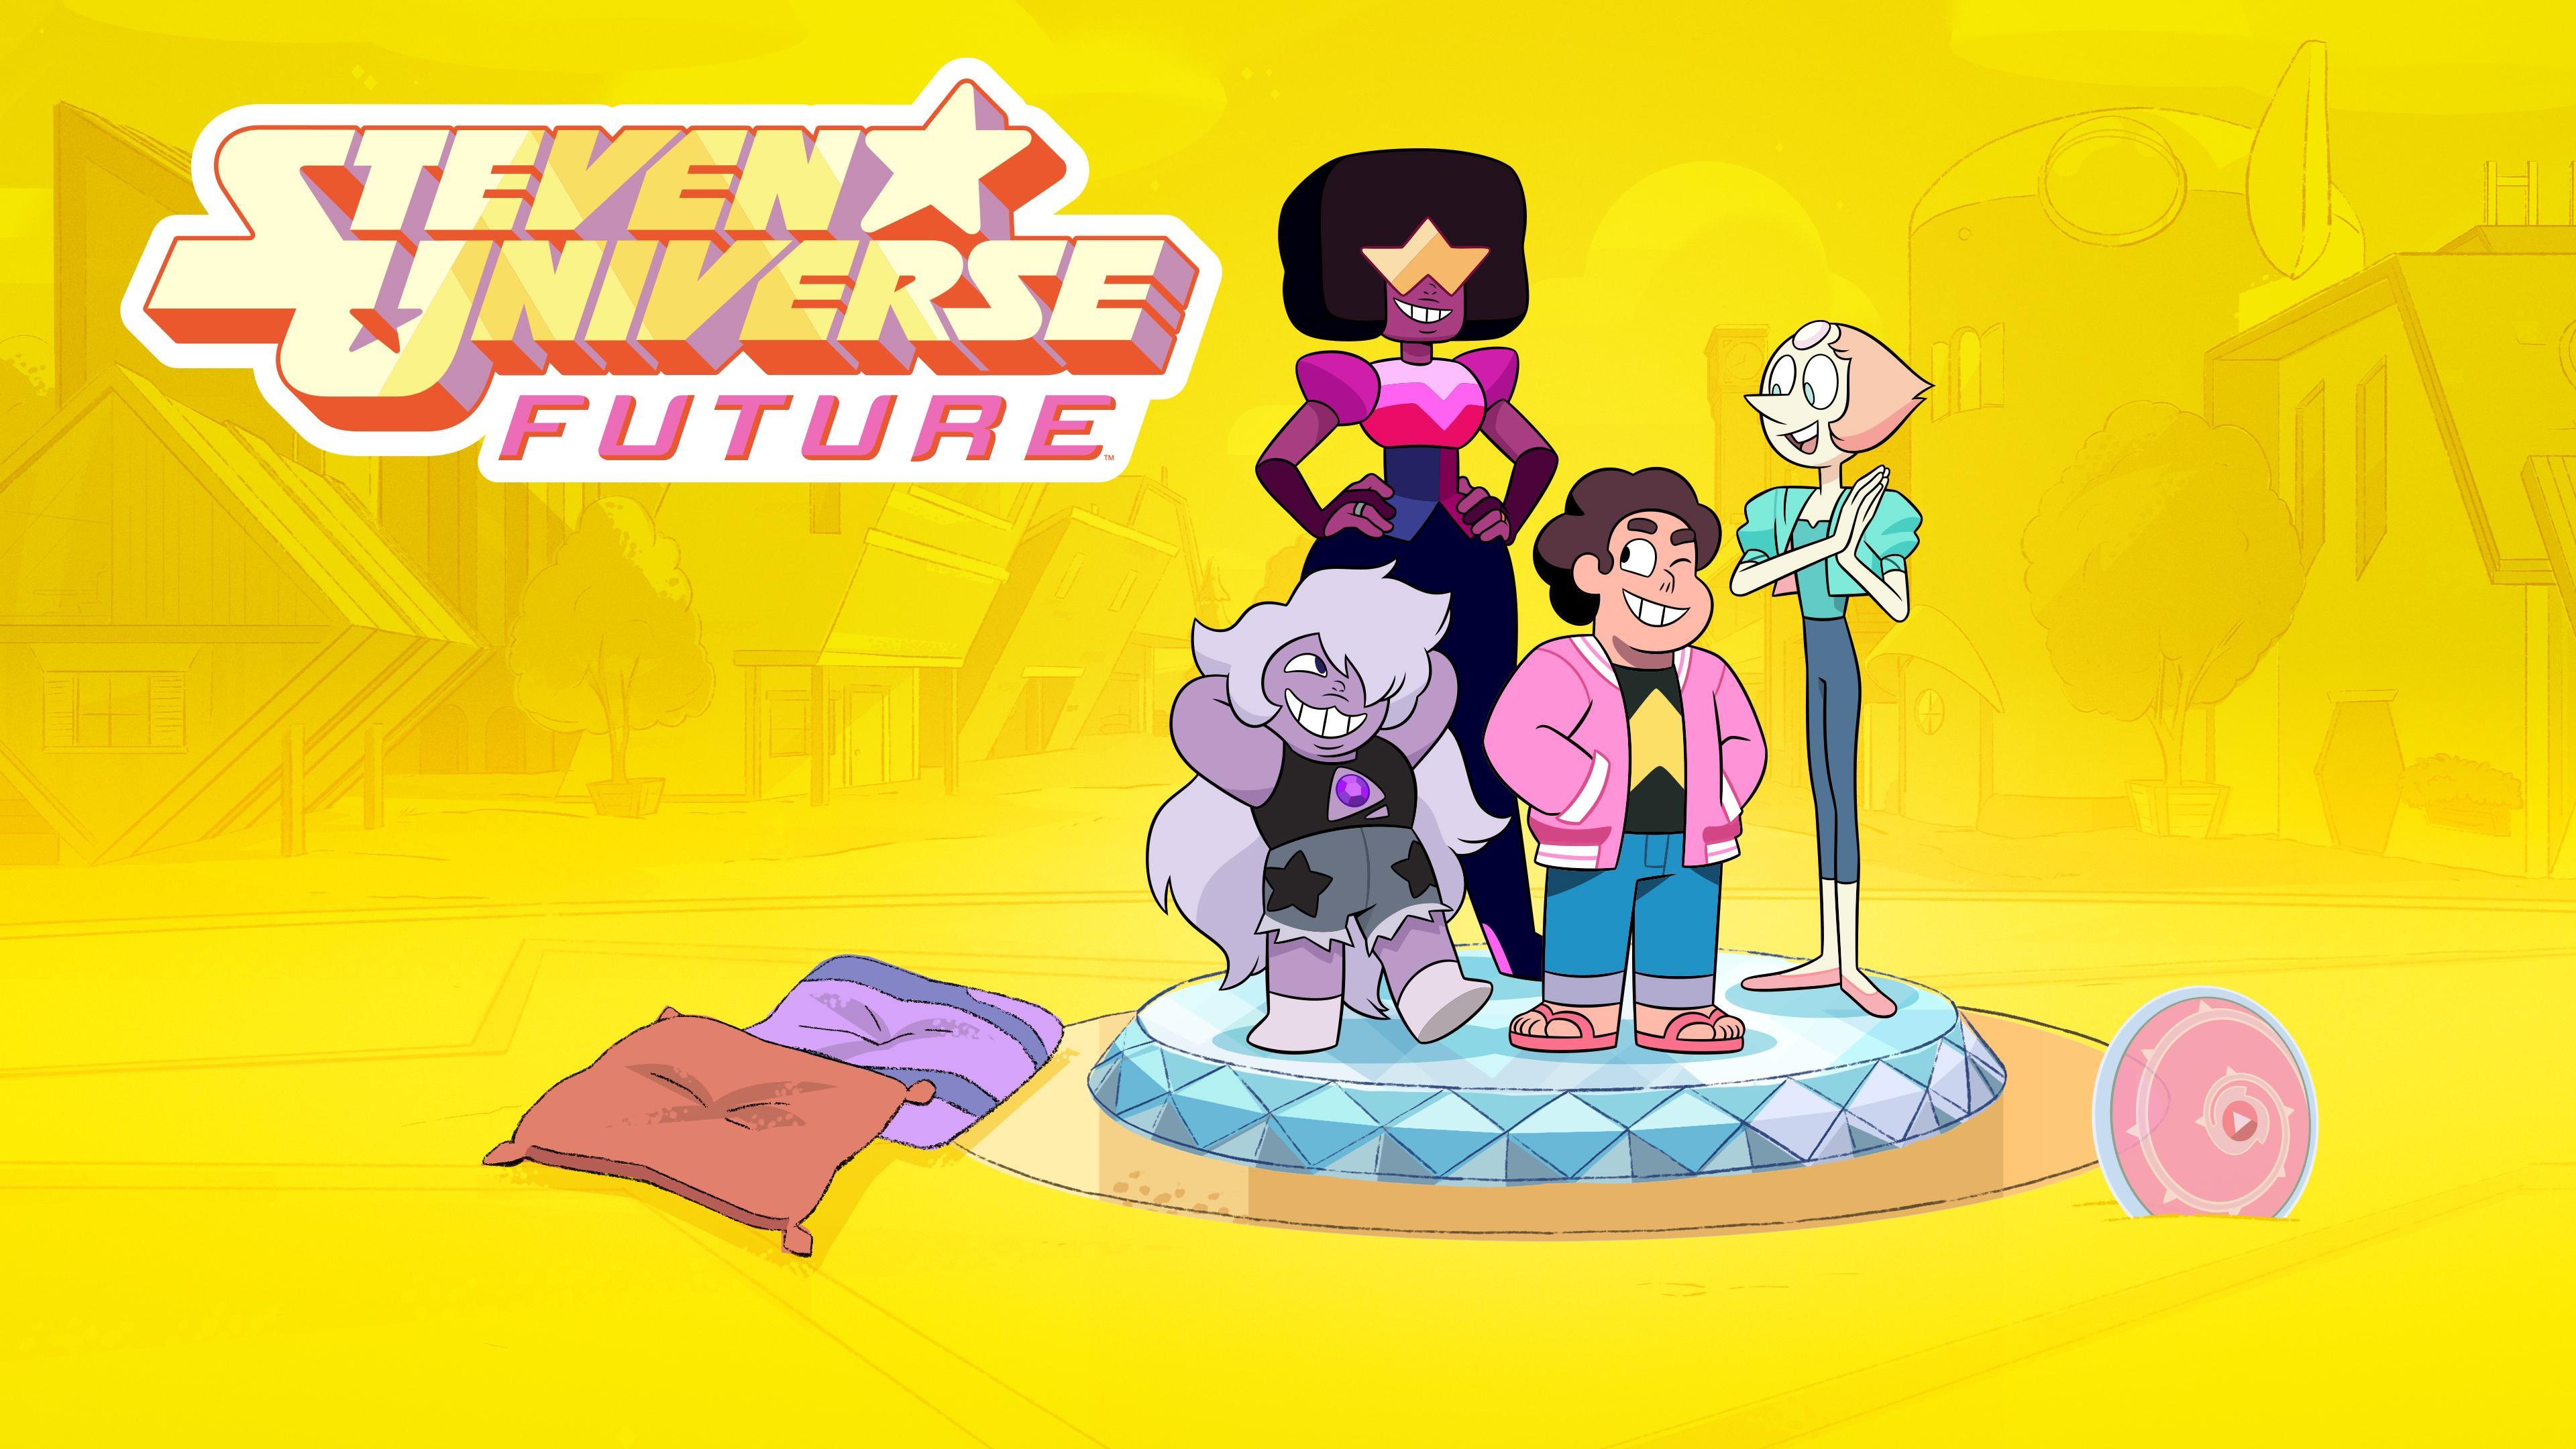 Assista Steven Universo temporada 2 episódio 13 em streaming